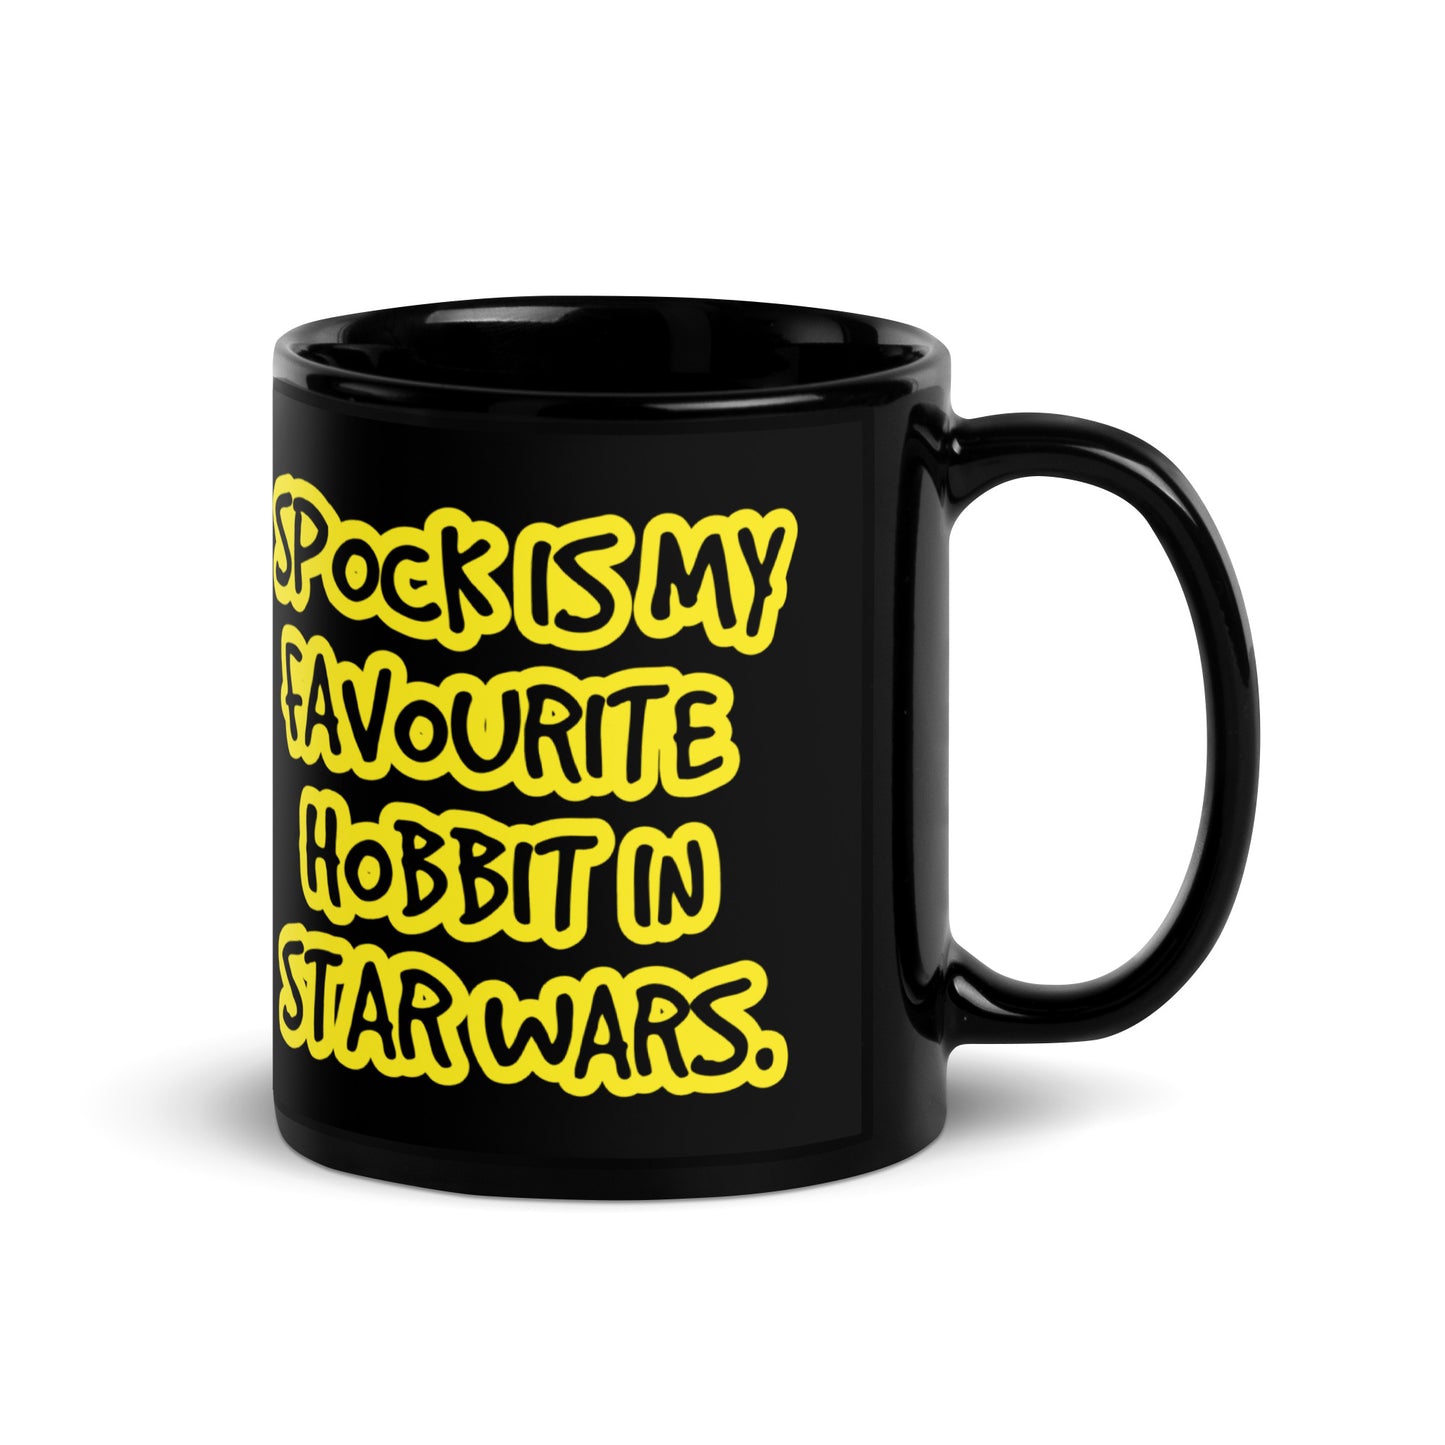 Star Trek black glossy mug, Star trek mug, Lord of the Rings mug, Star Wars mug, Star trek mug ,Lord of the Rings mug, star wars mug - McLaren Tee Hub 